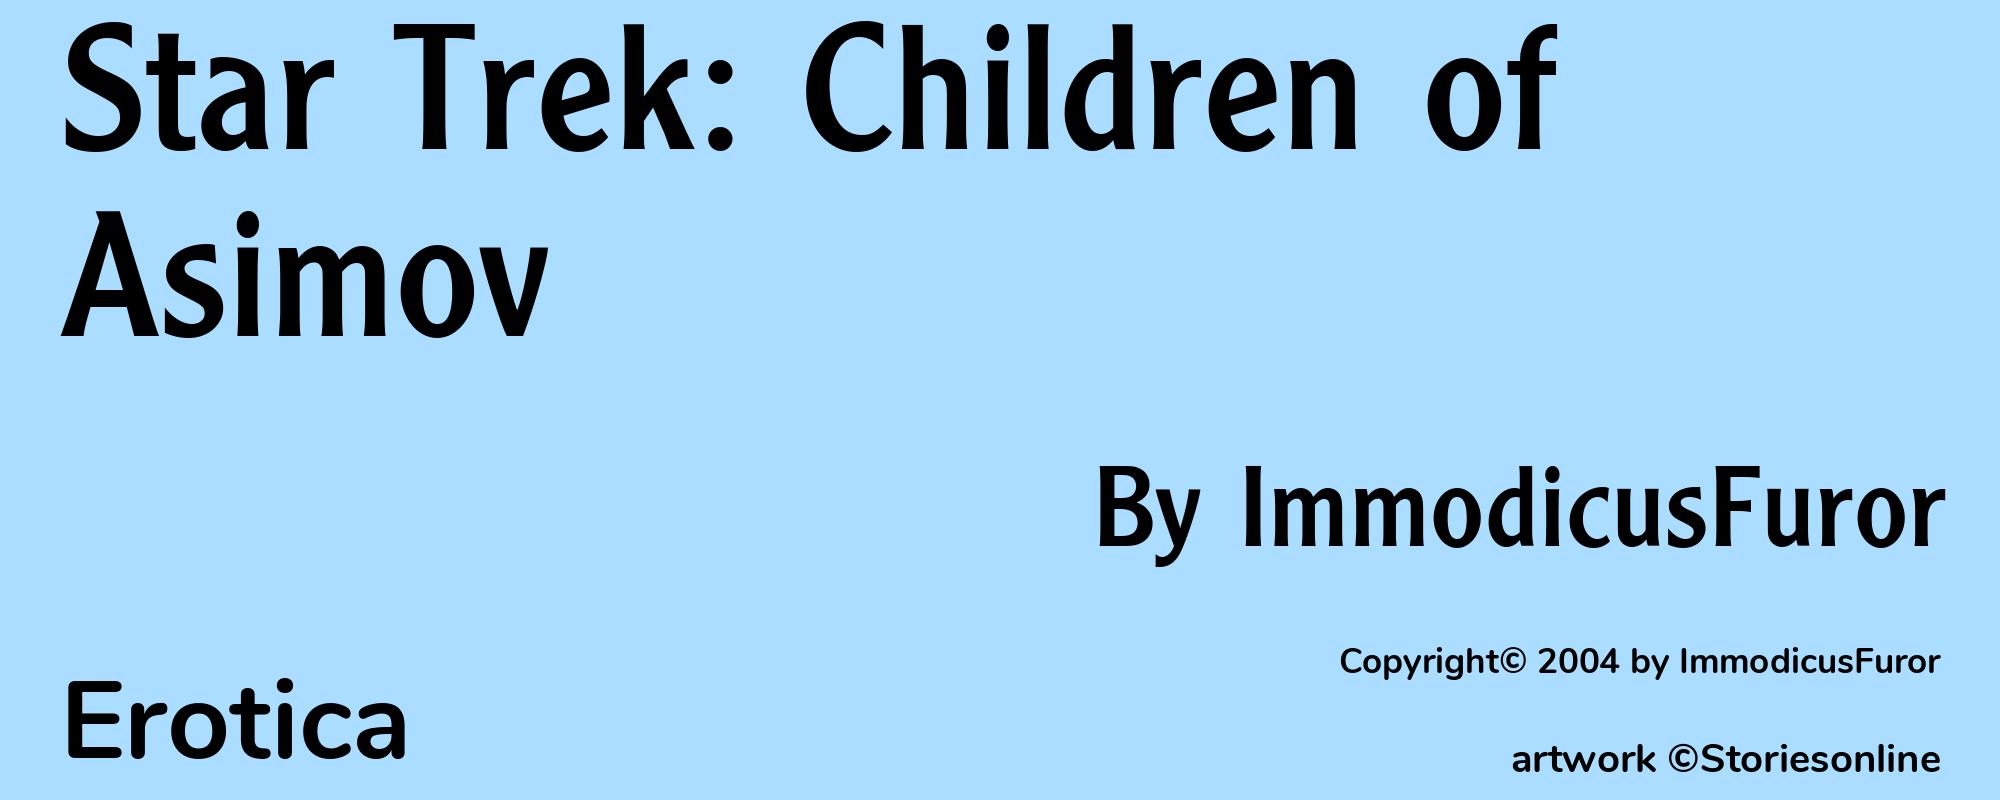 Star Trek: Children of Asimov - Cover